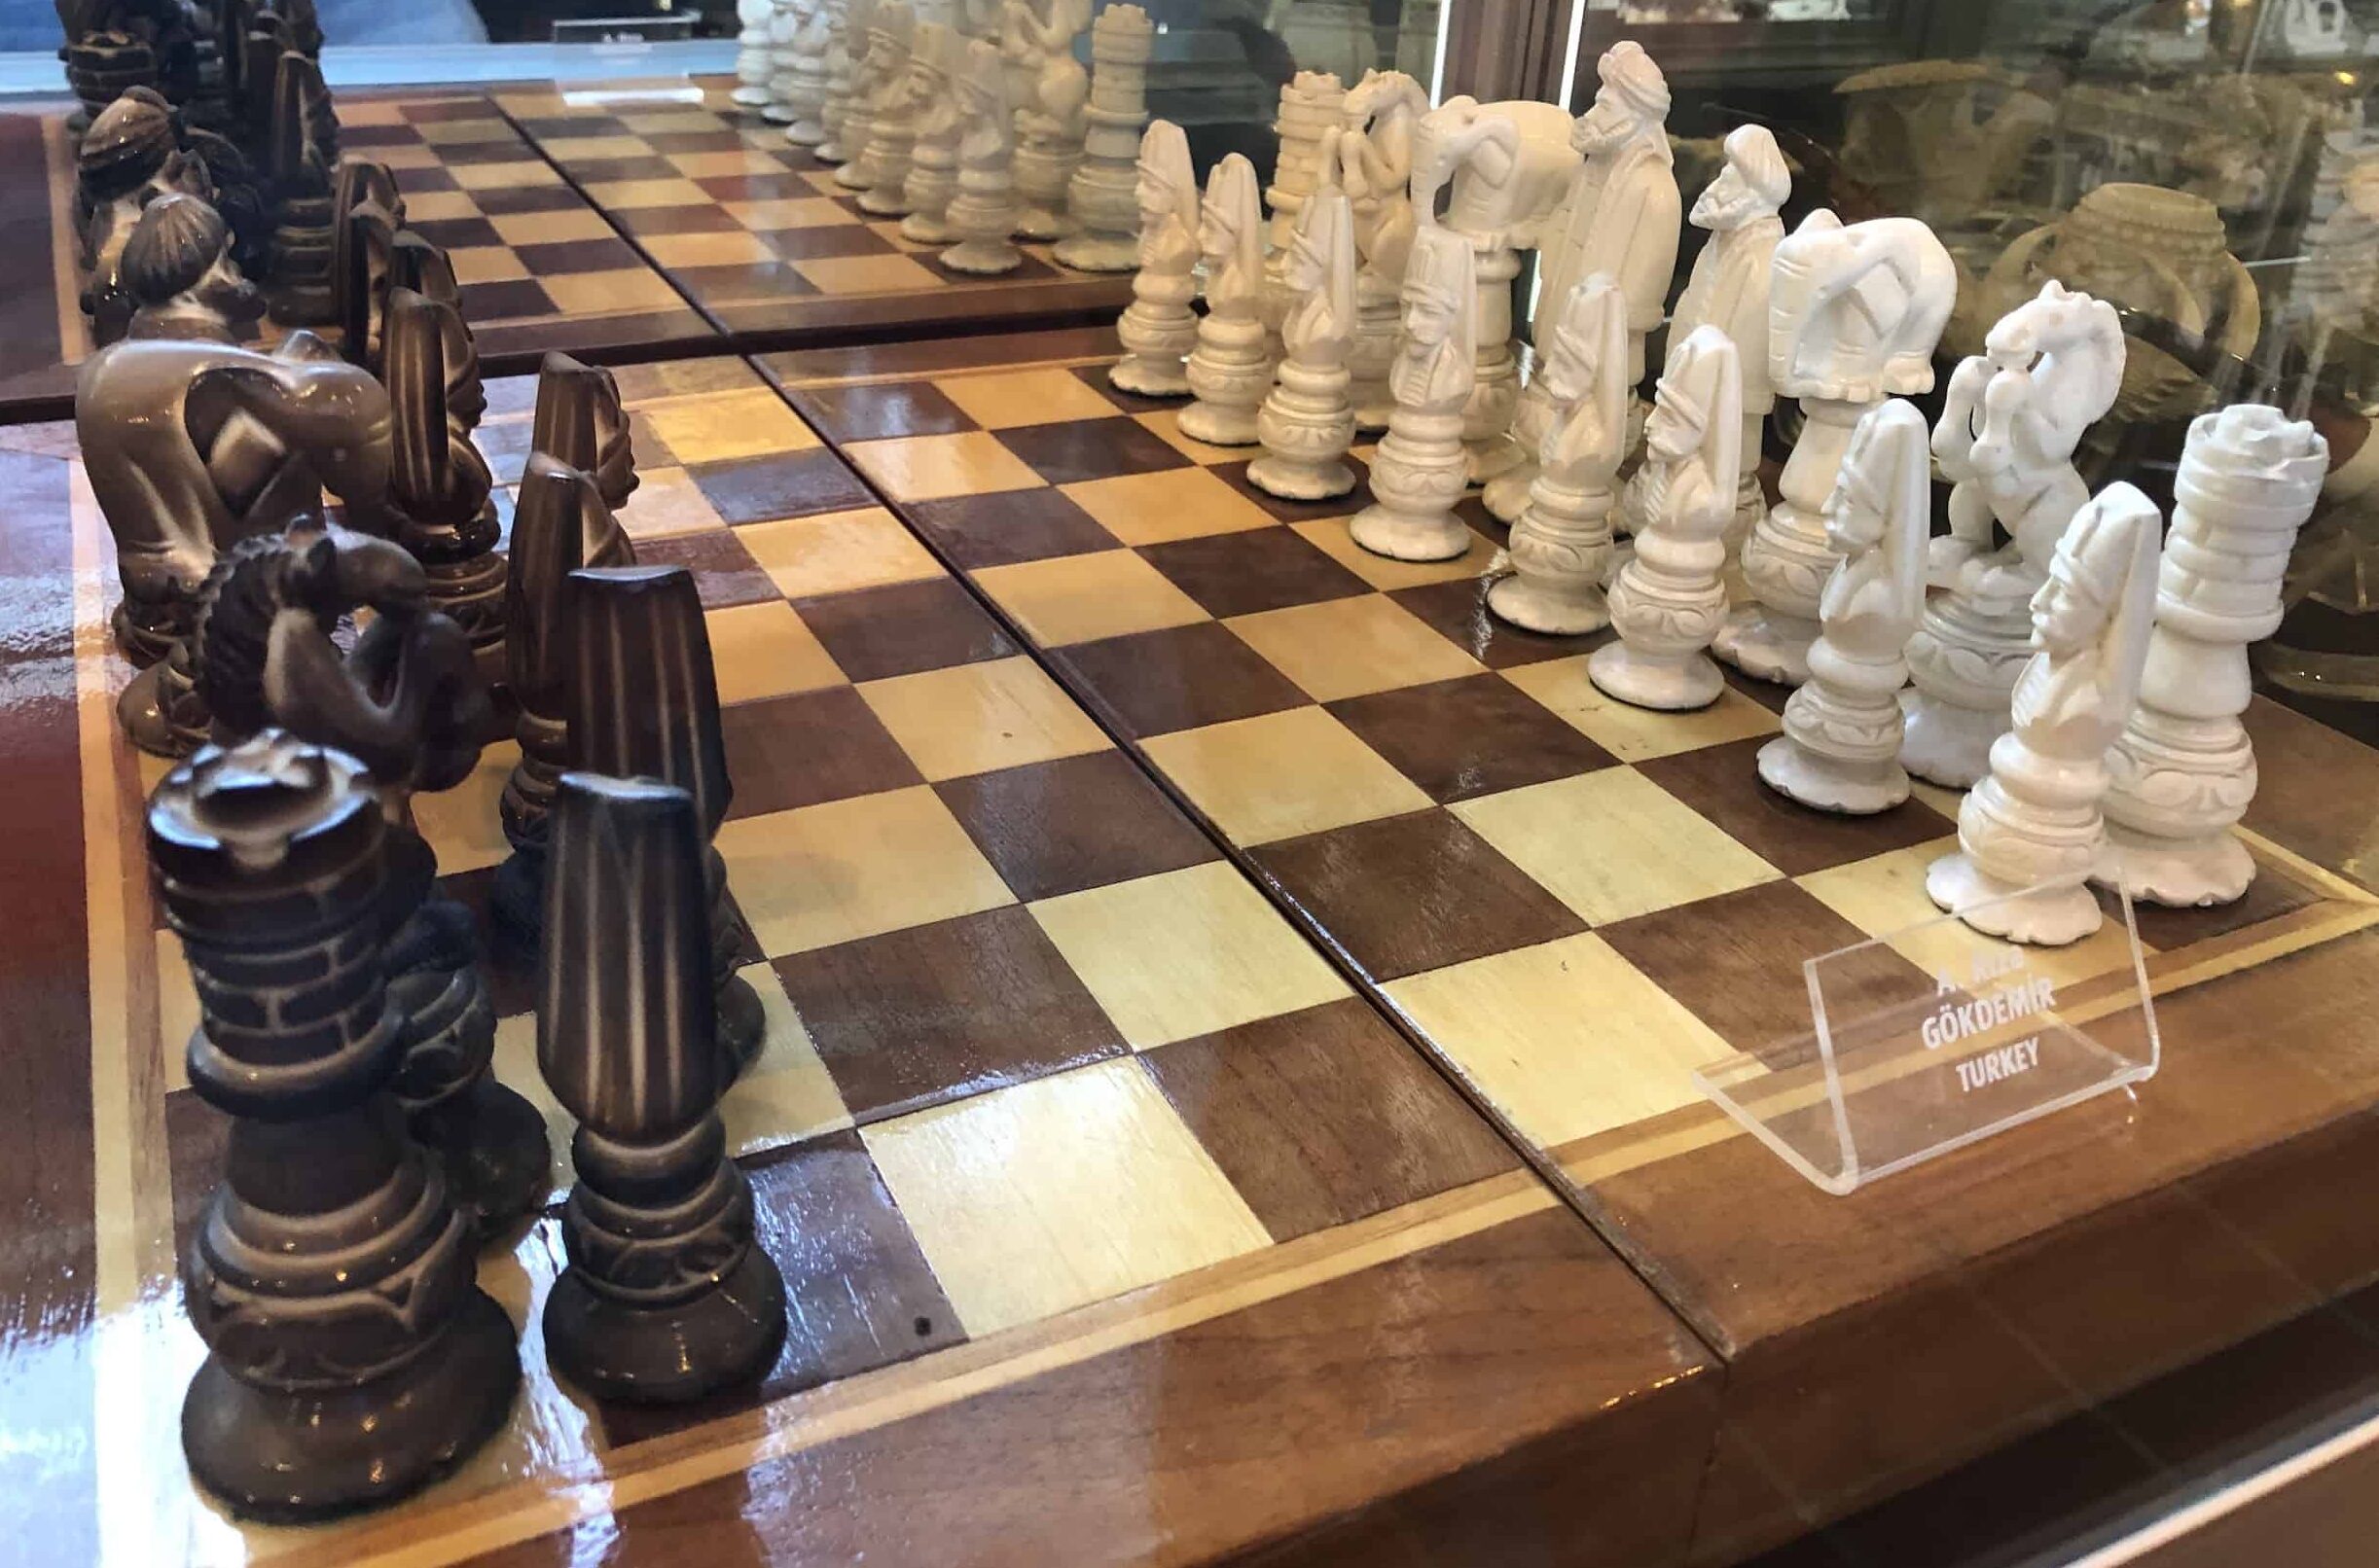 Chess pieces made of meerschaum at the Kurşunlu Complex